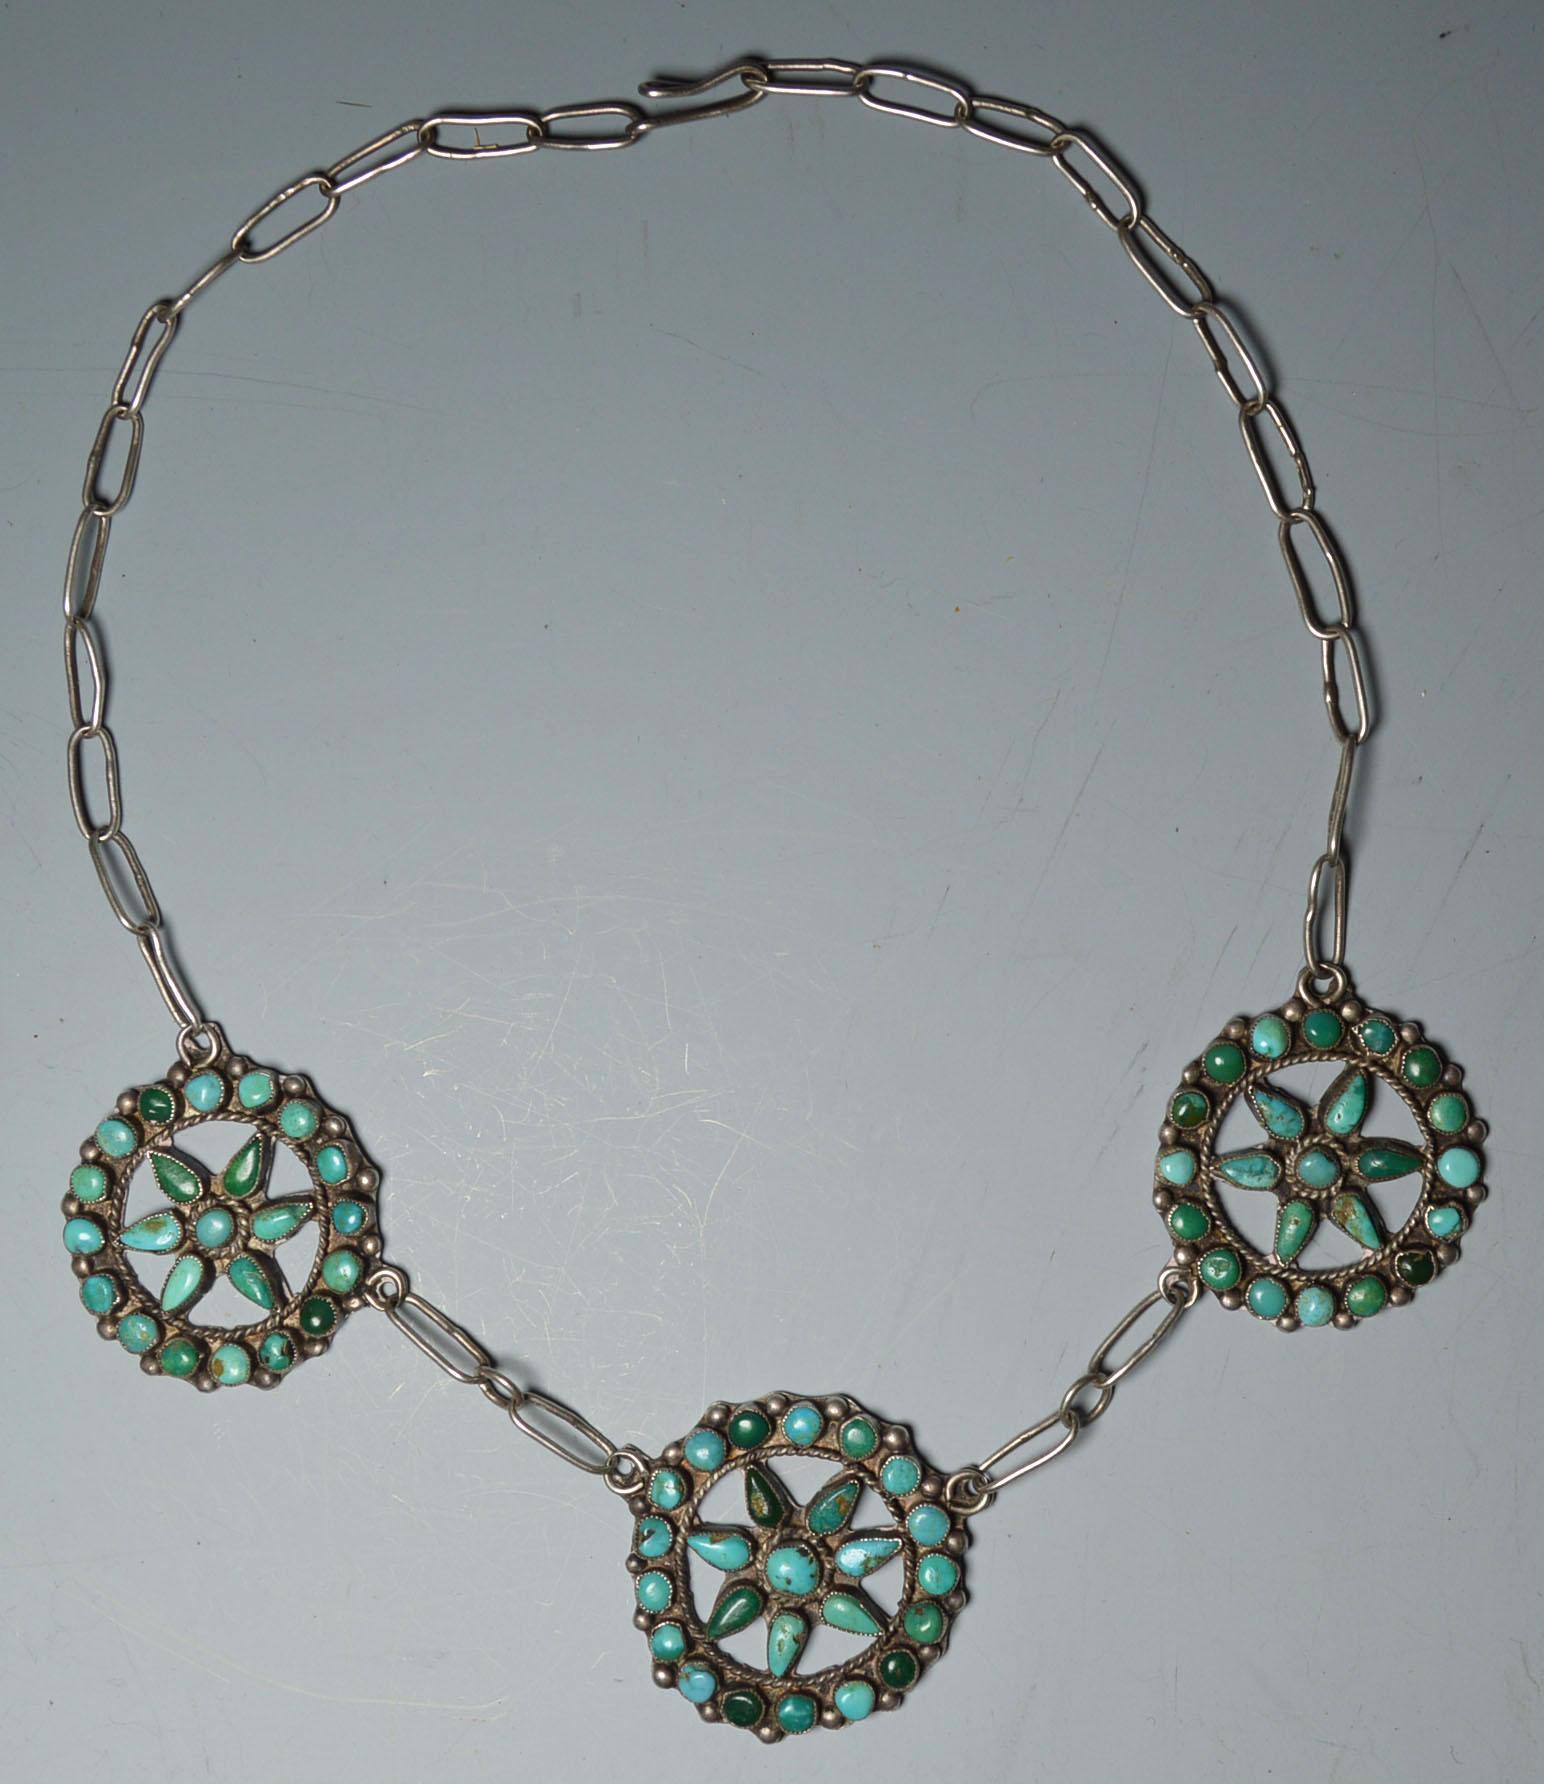 North American Native American Indian Fine Vintage Navajo Necklace, circa 1930